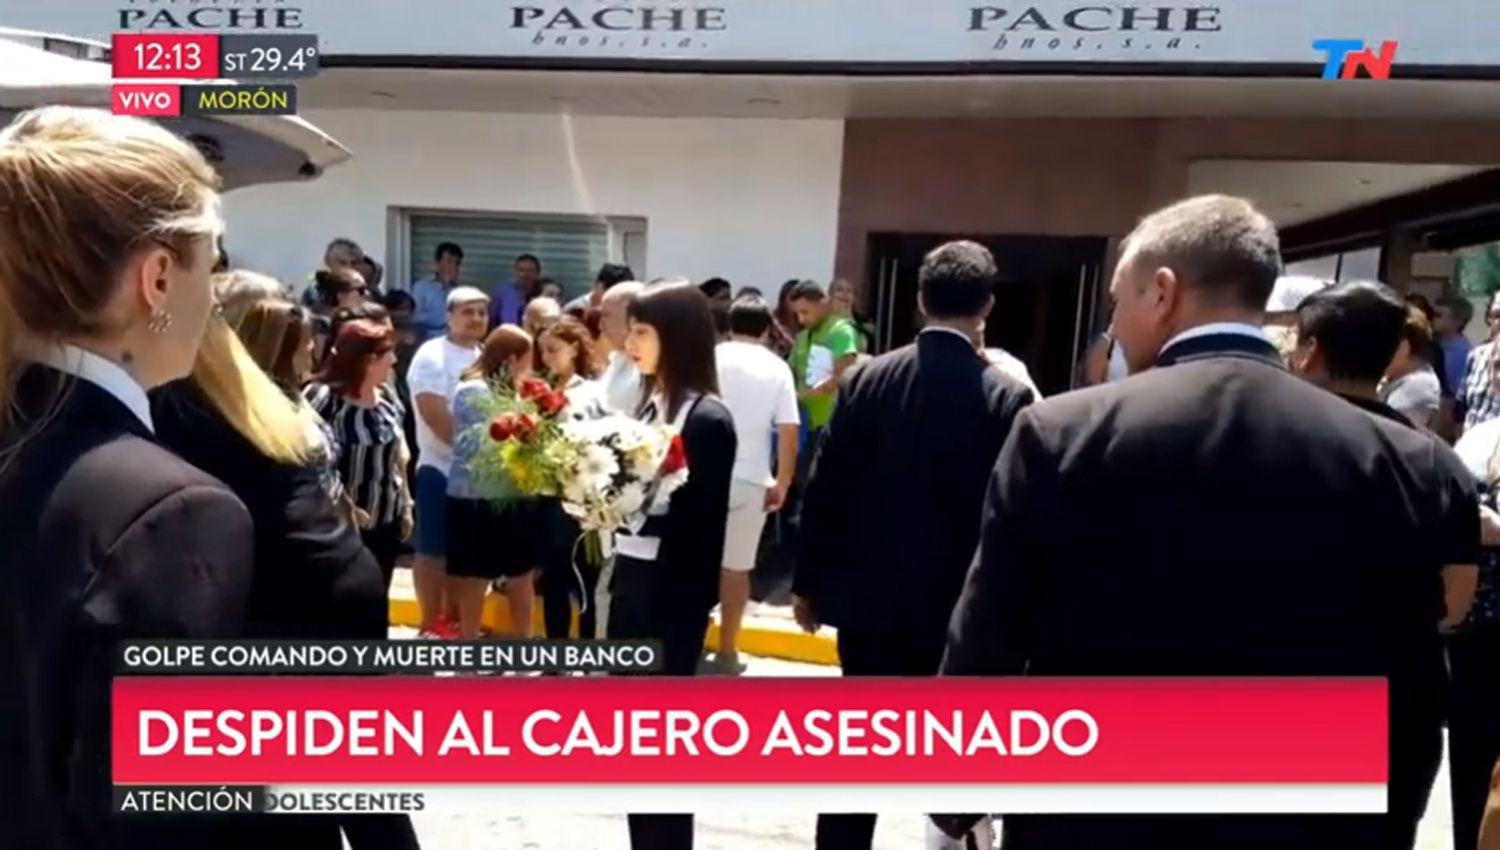 Profundo dolor en la despedida a Germaacuten Chaacutevez el cajero asesinado en el asalto al Banco Nacioacuten